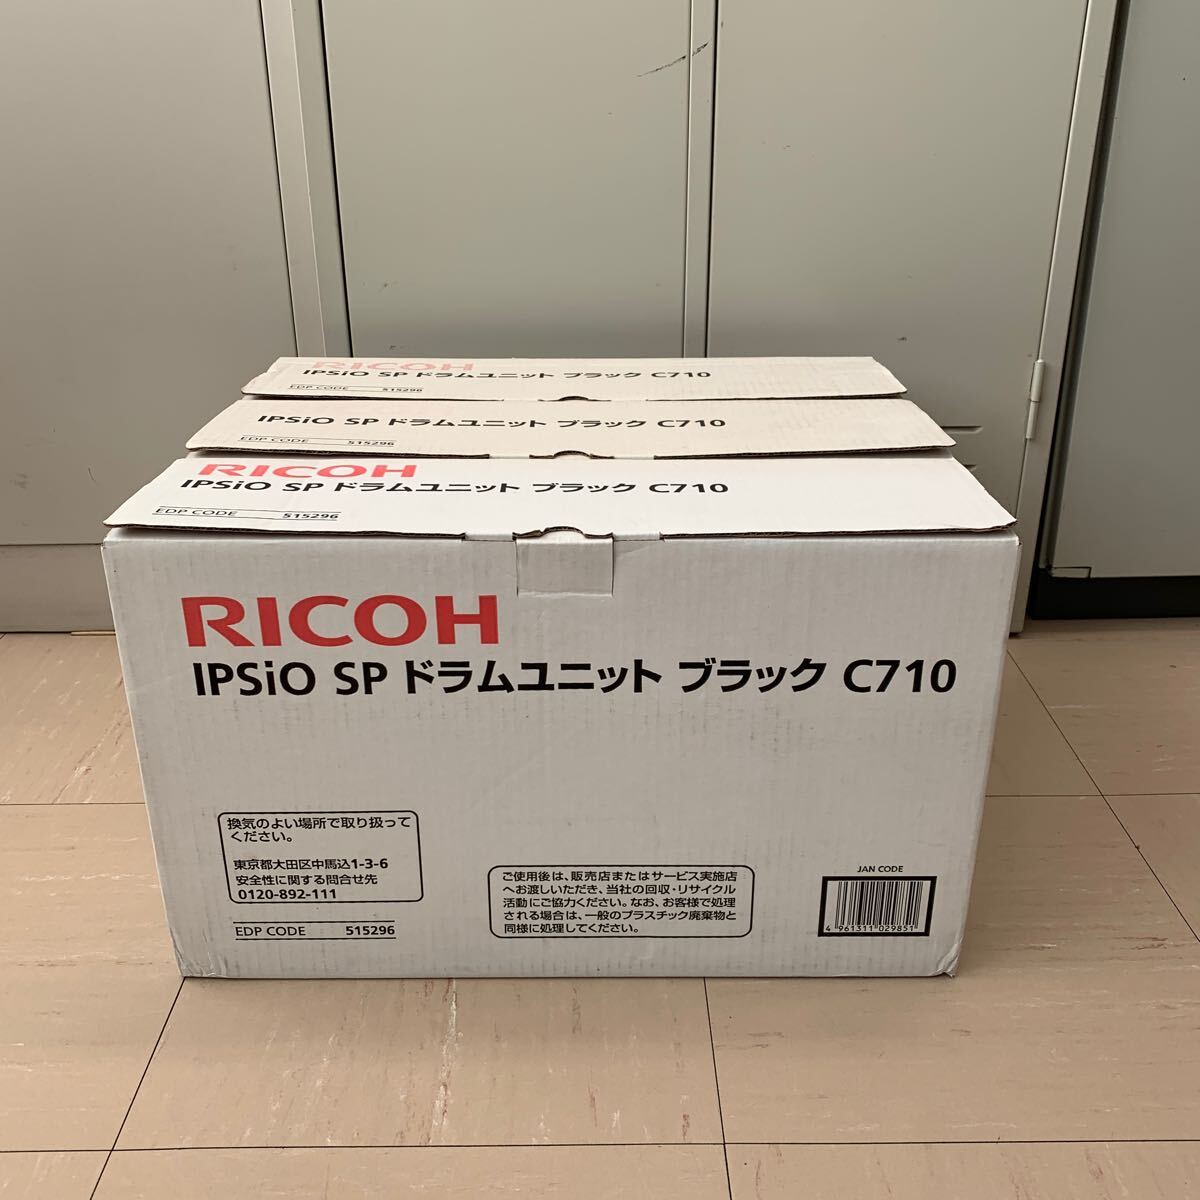 RICOH純正 IPsio SP ドラムユニットC710 ブラック 3セット_画像1